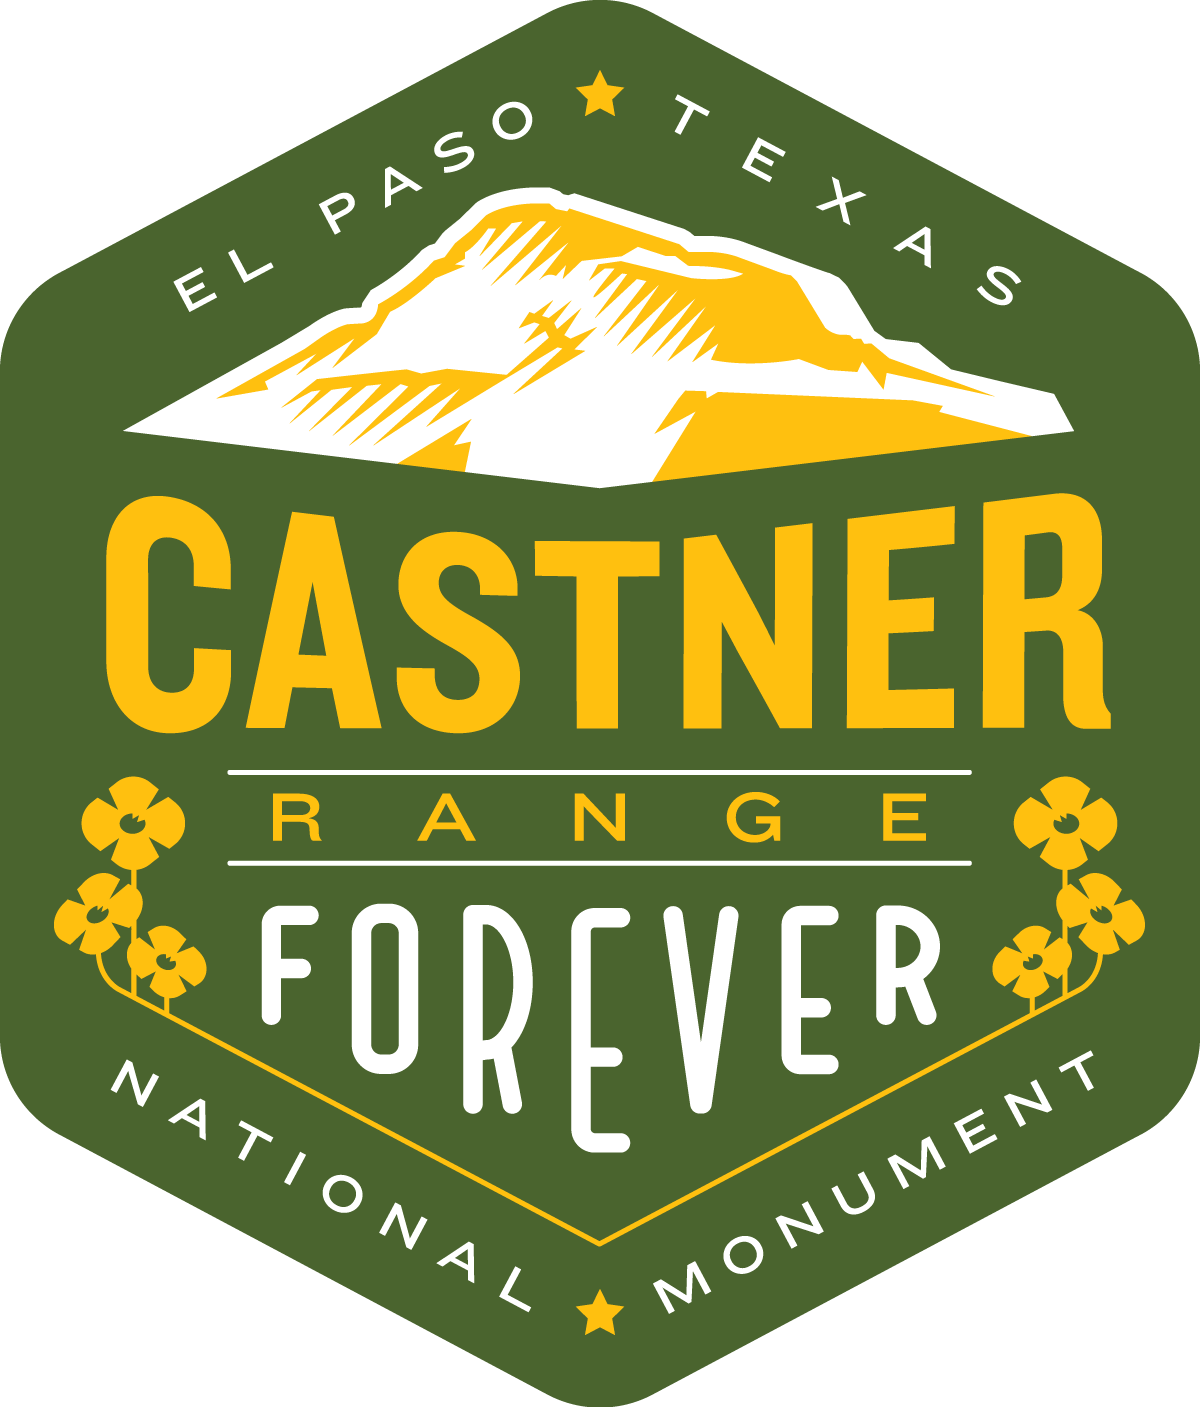 Castner Range National Monument